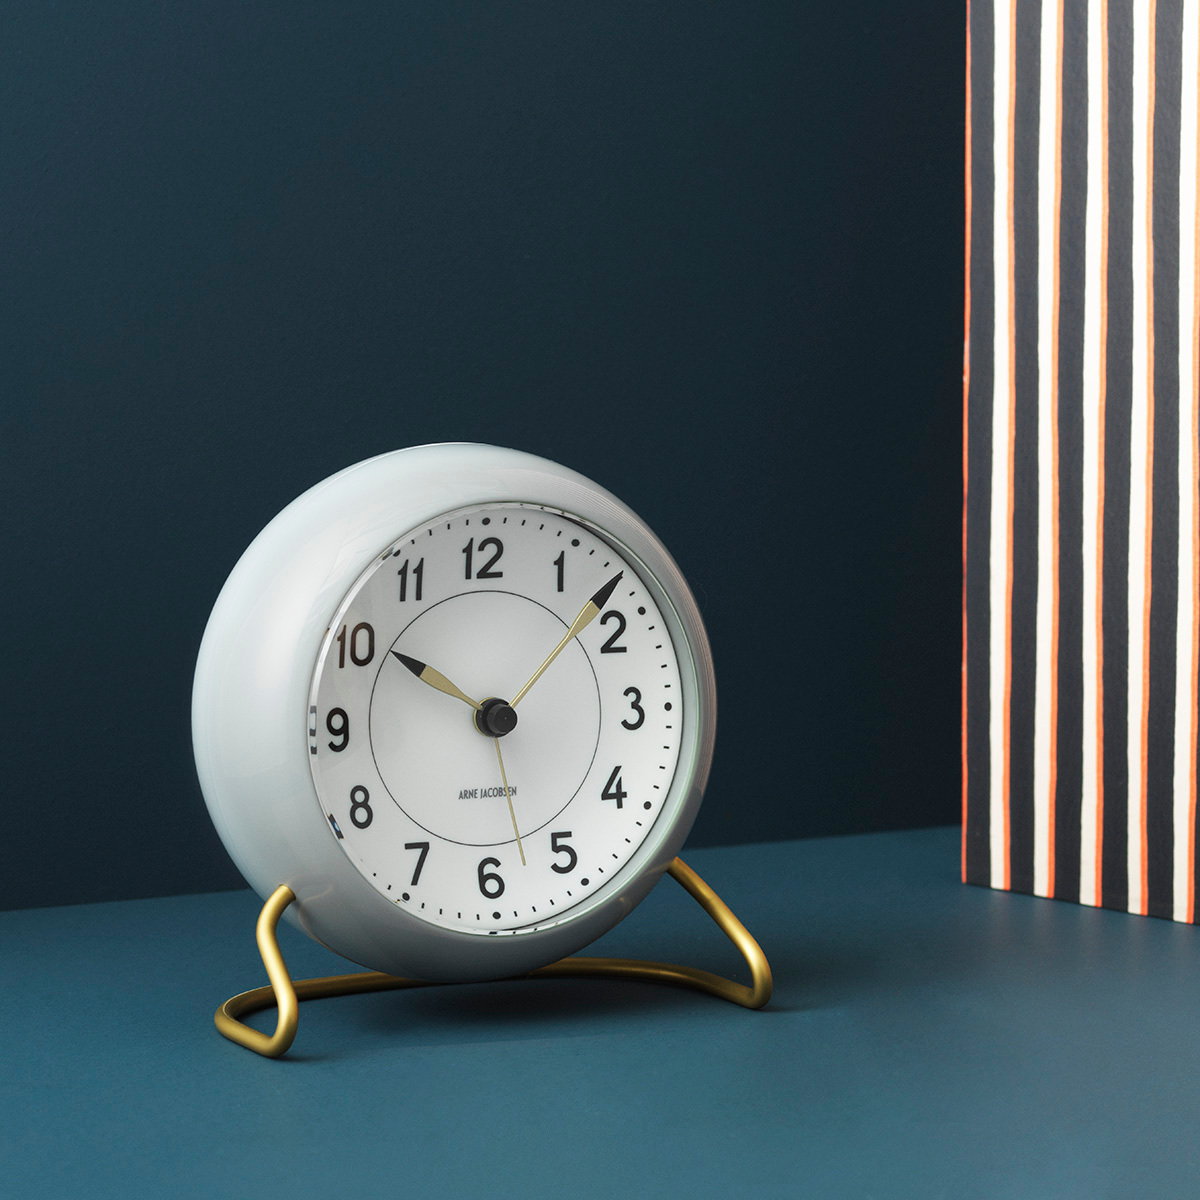 Station table clock from Arne Jacobsen Clocks